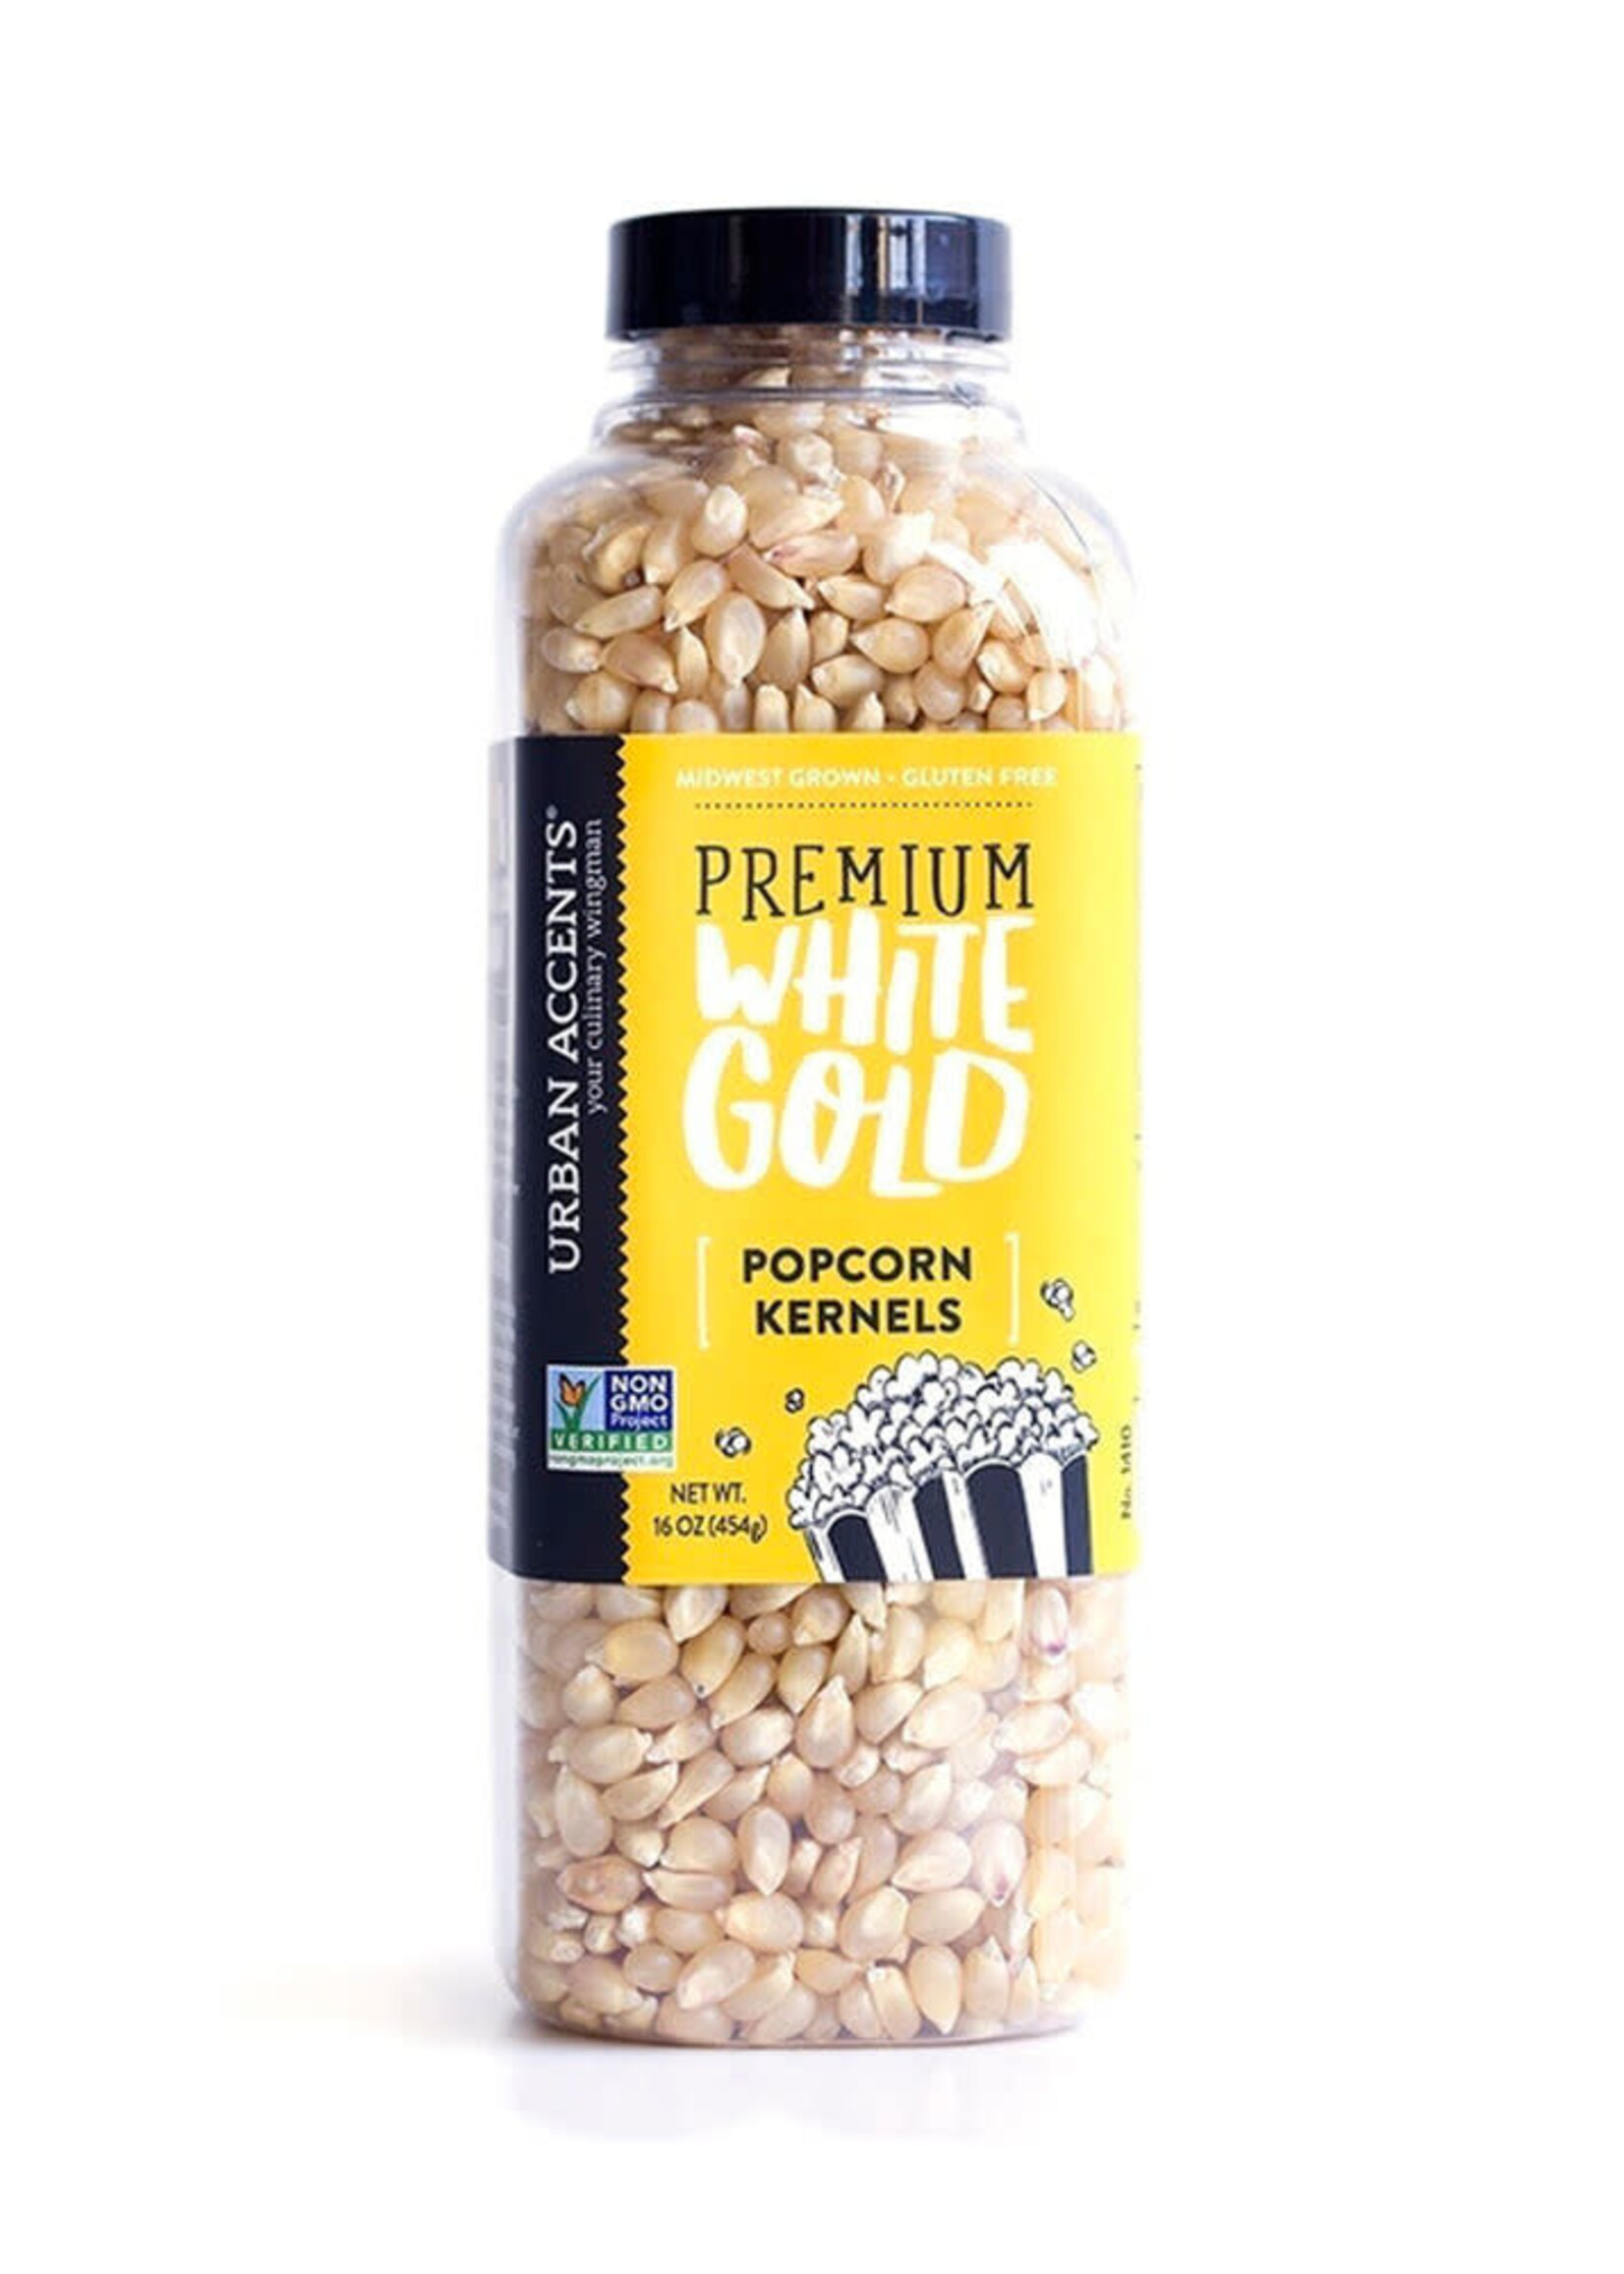 Premium White Gold Popcorn Kernels